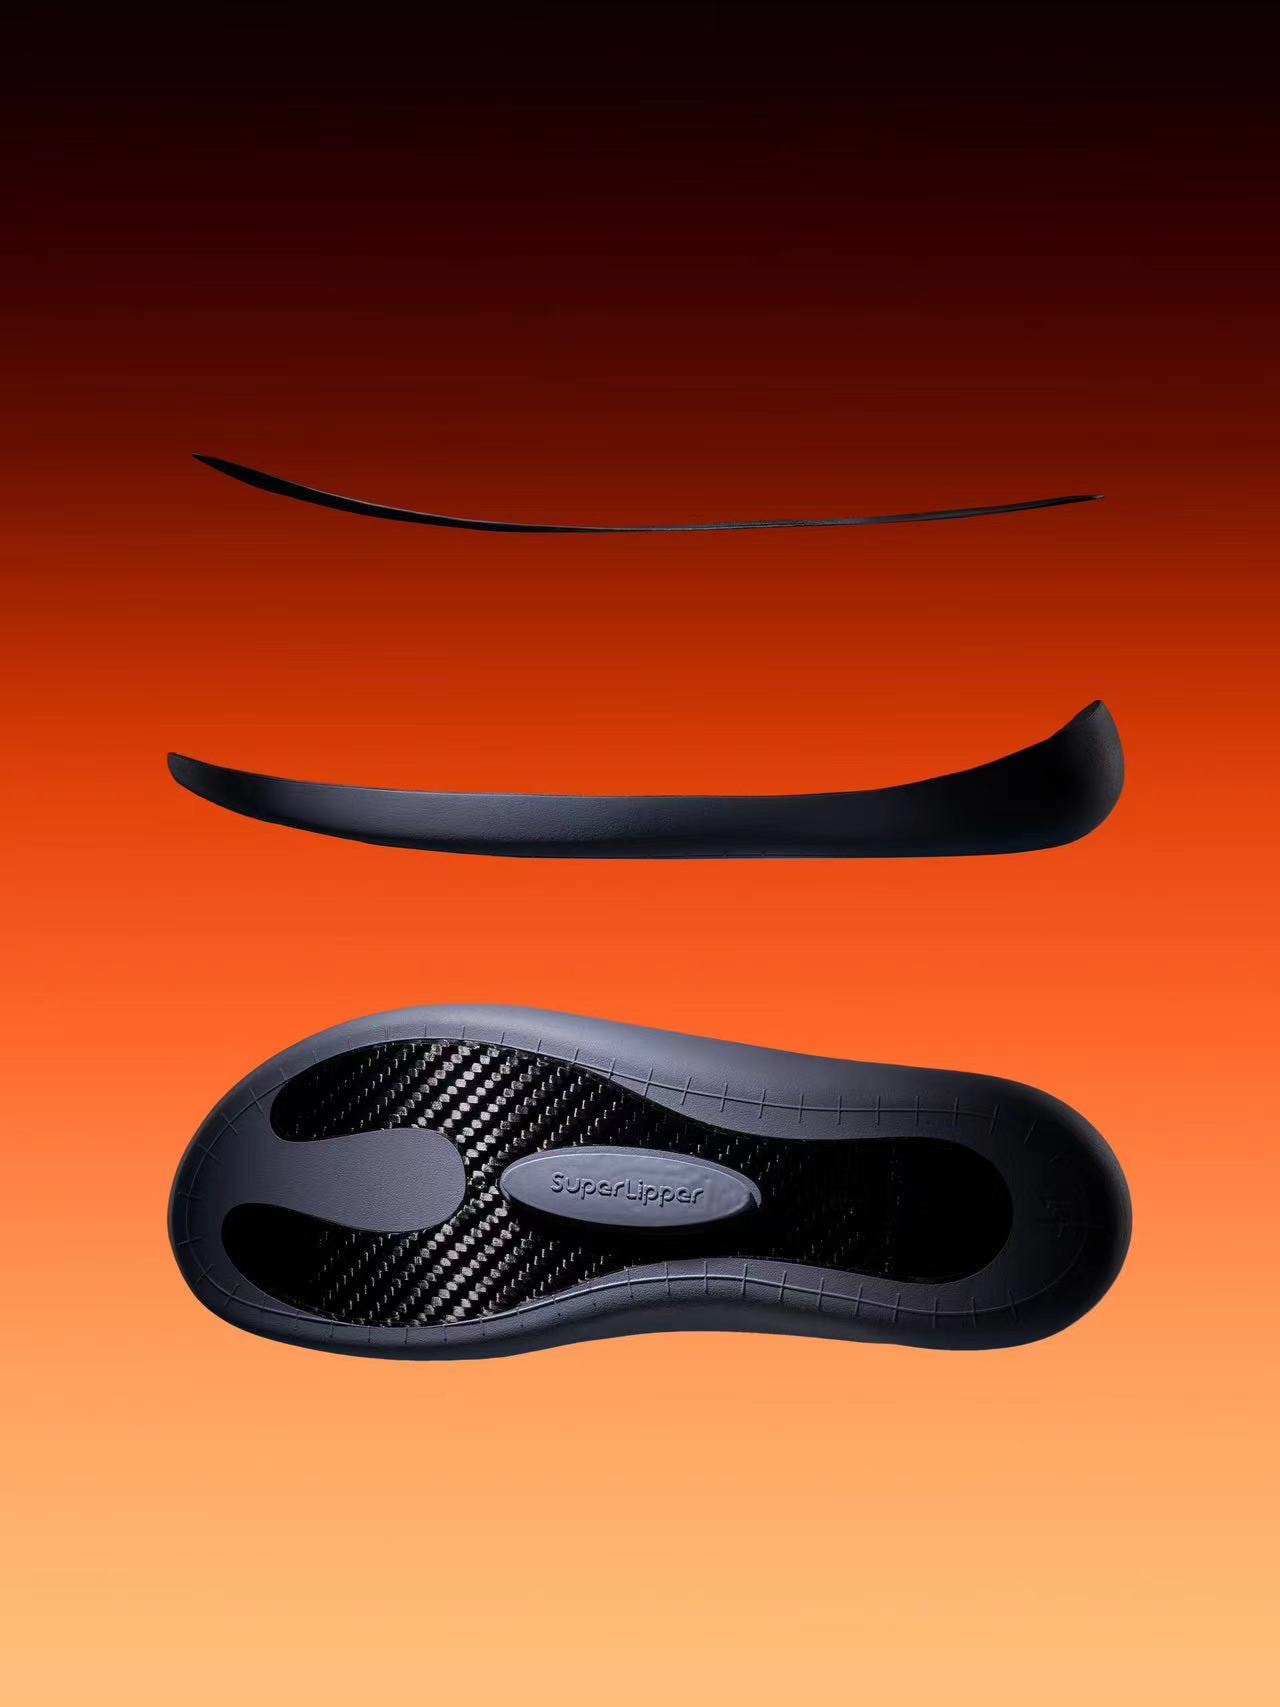 SuperLipper 发布全新功能凉鞋 WAVE